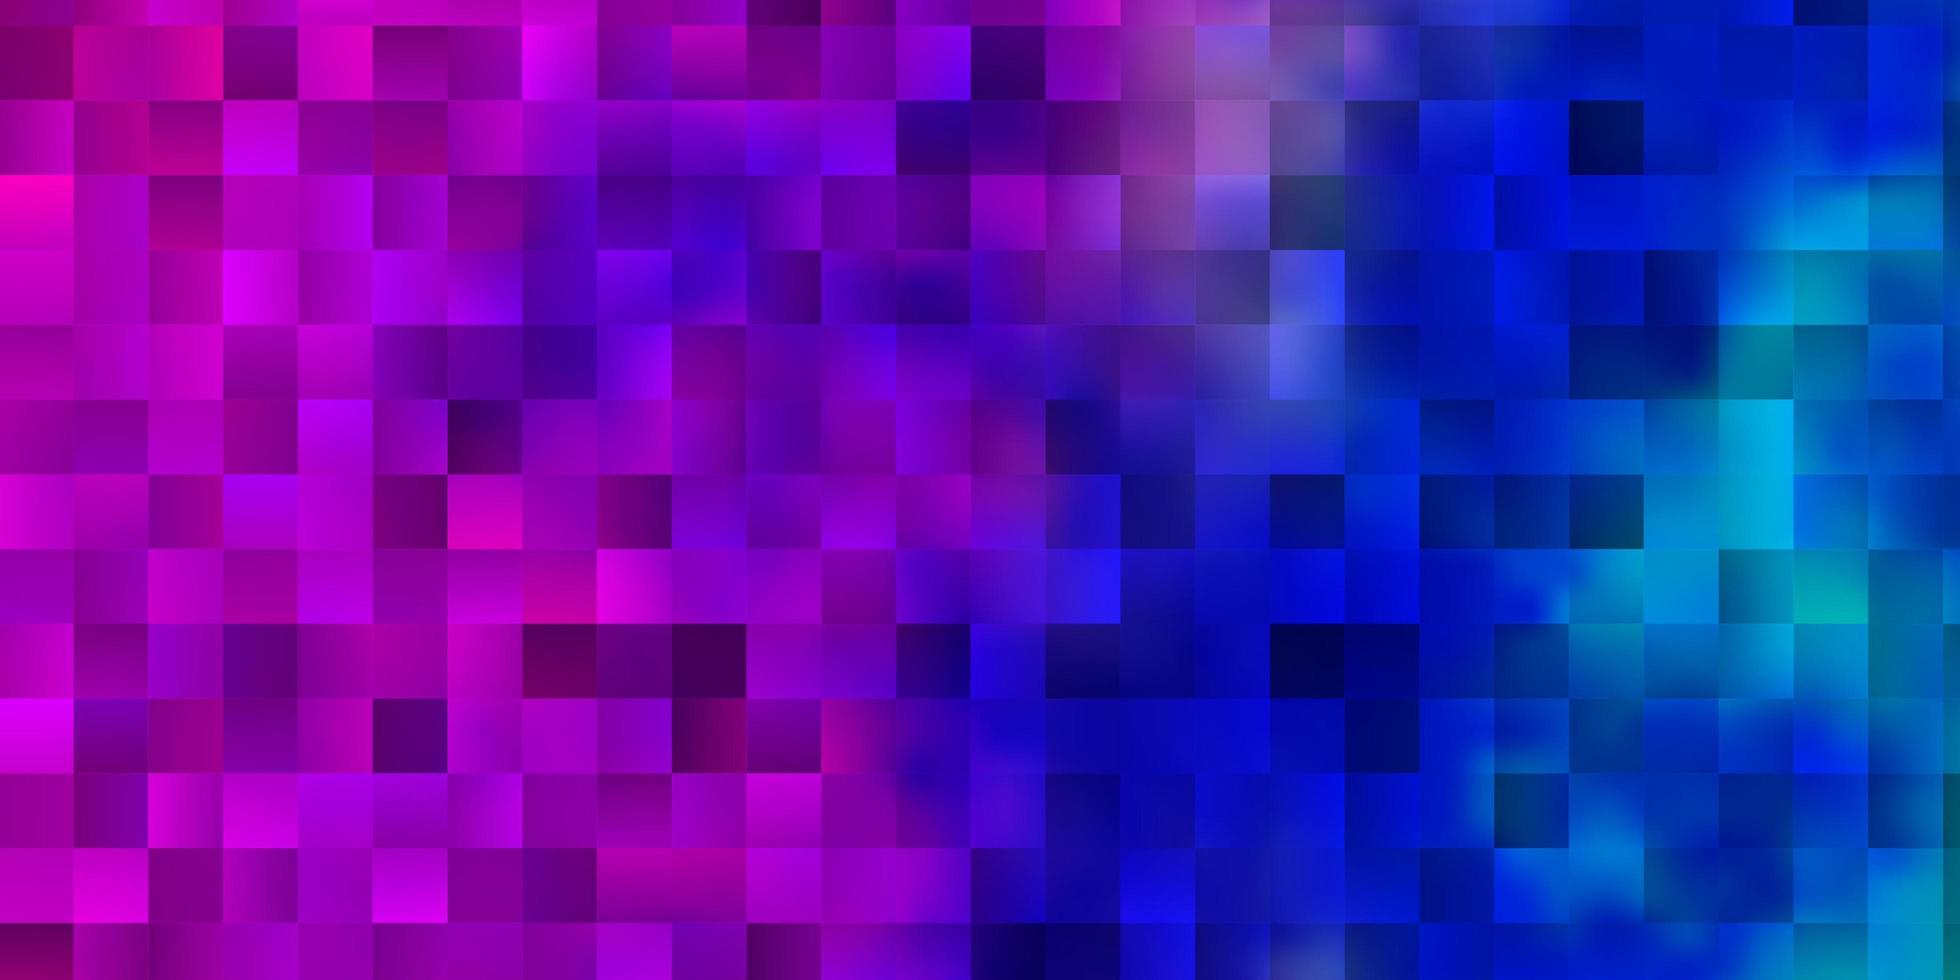 Fondo de vector rosa claro, azul en estilo poligonal.